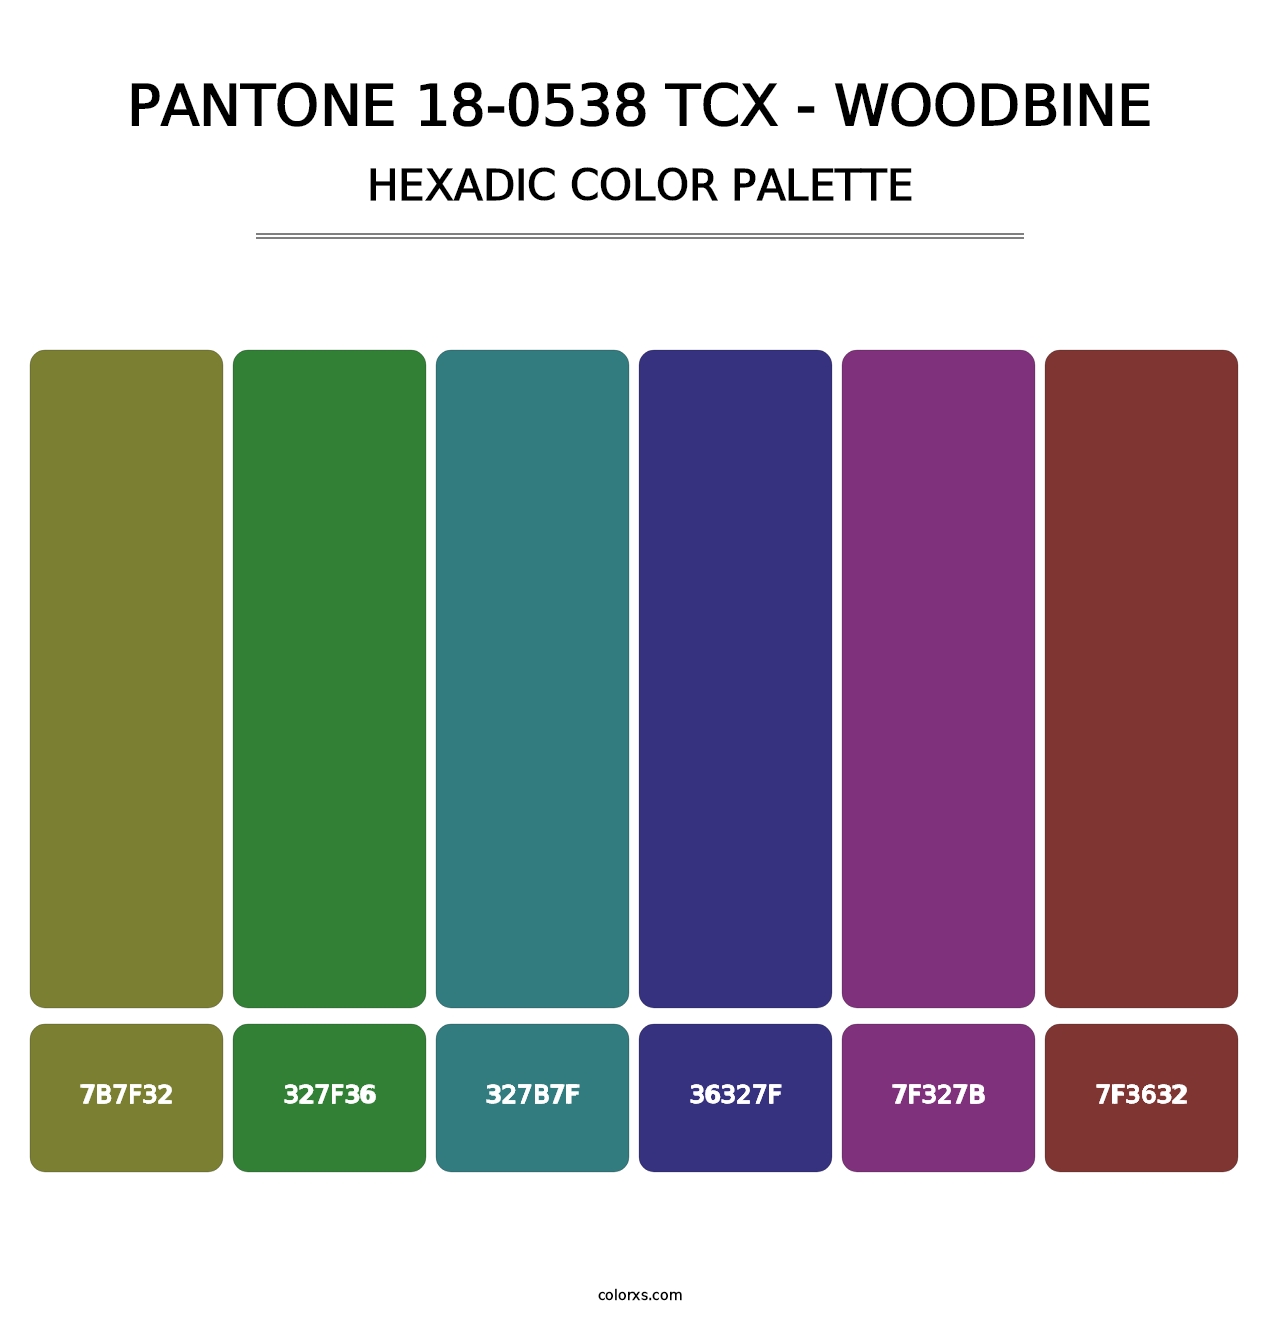 PANTONE 18-0538 TCX - Woodbine - Hexadic Color Palette